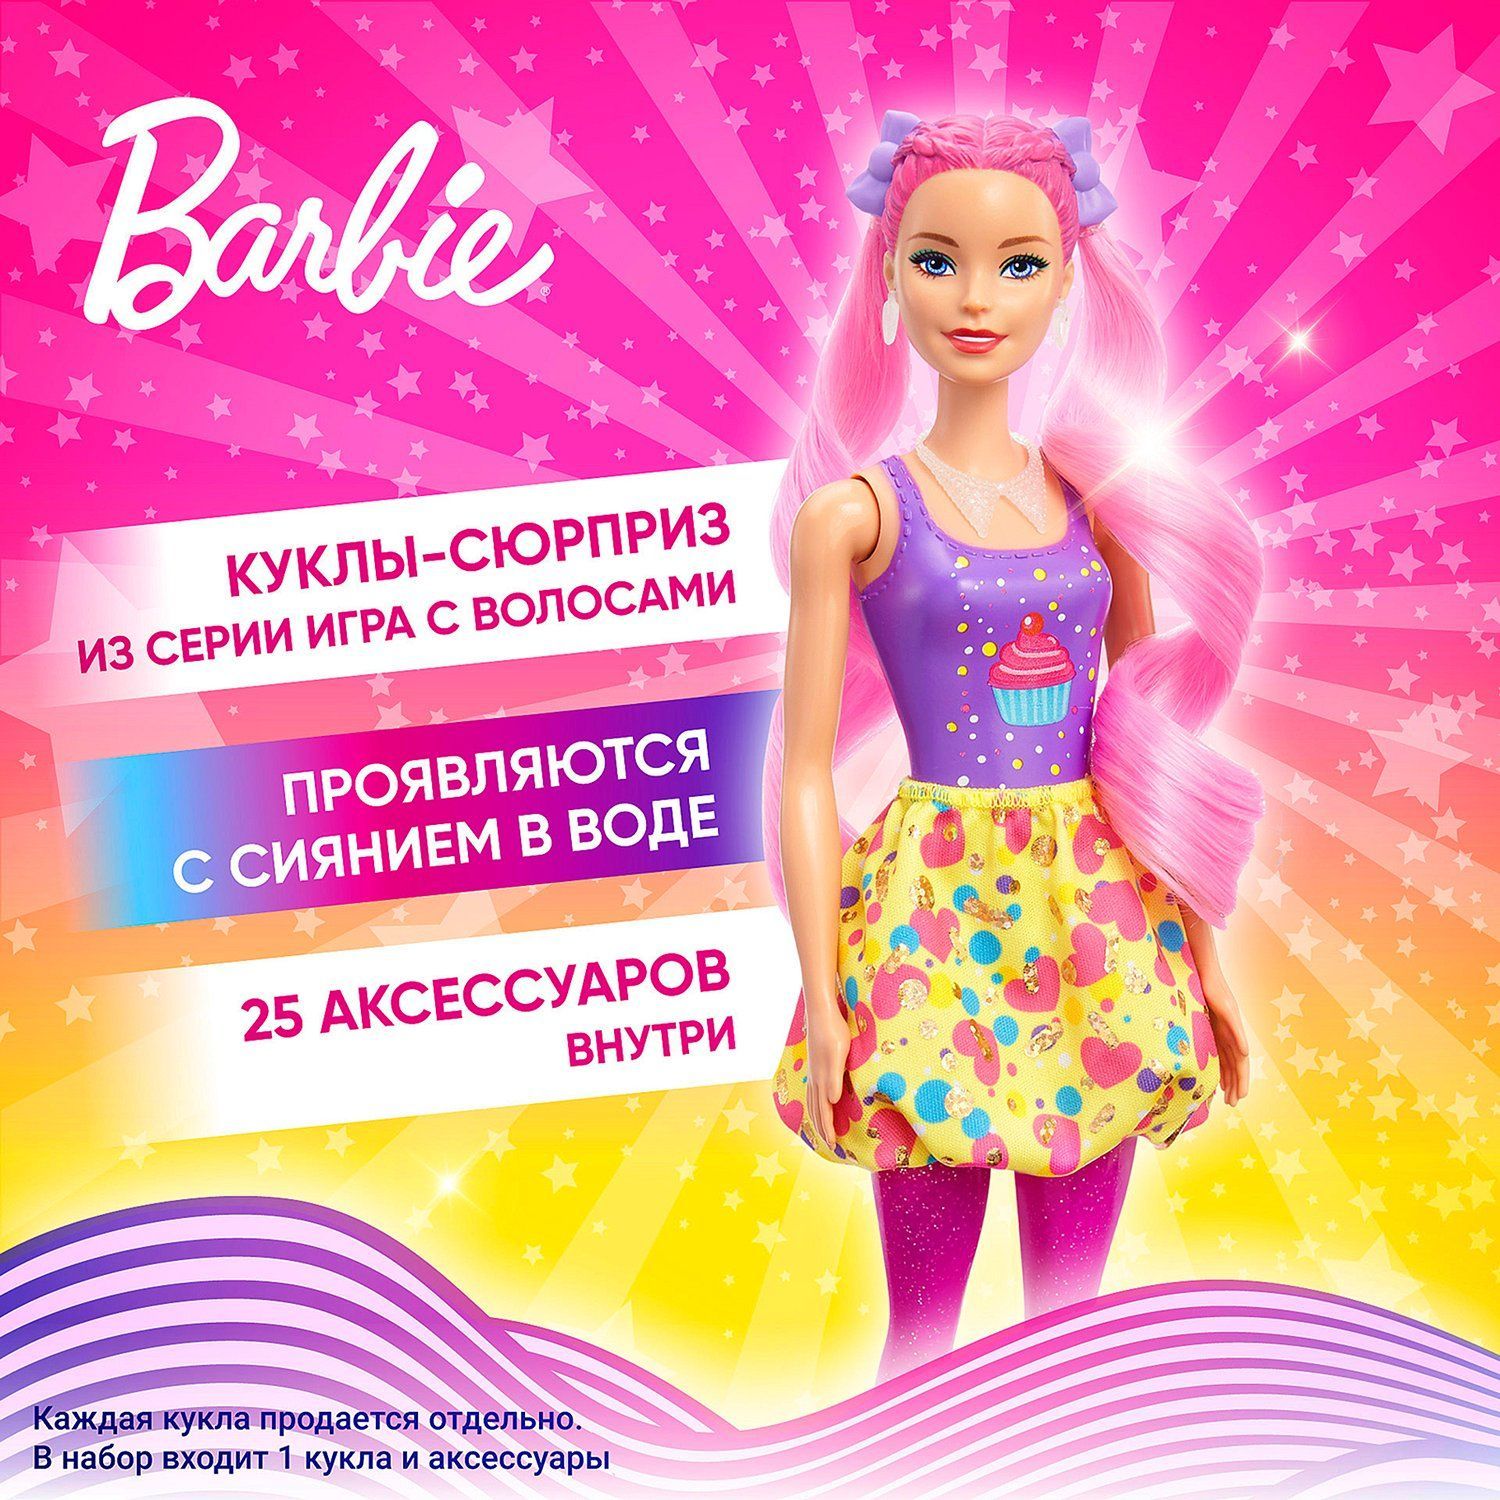 Набор 7888X Барби Модная прическа для создания причесок Barbie